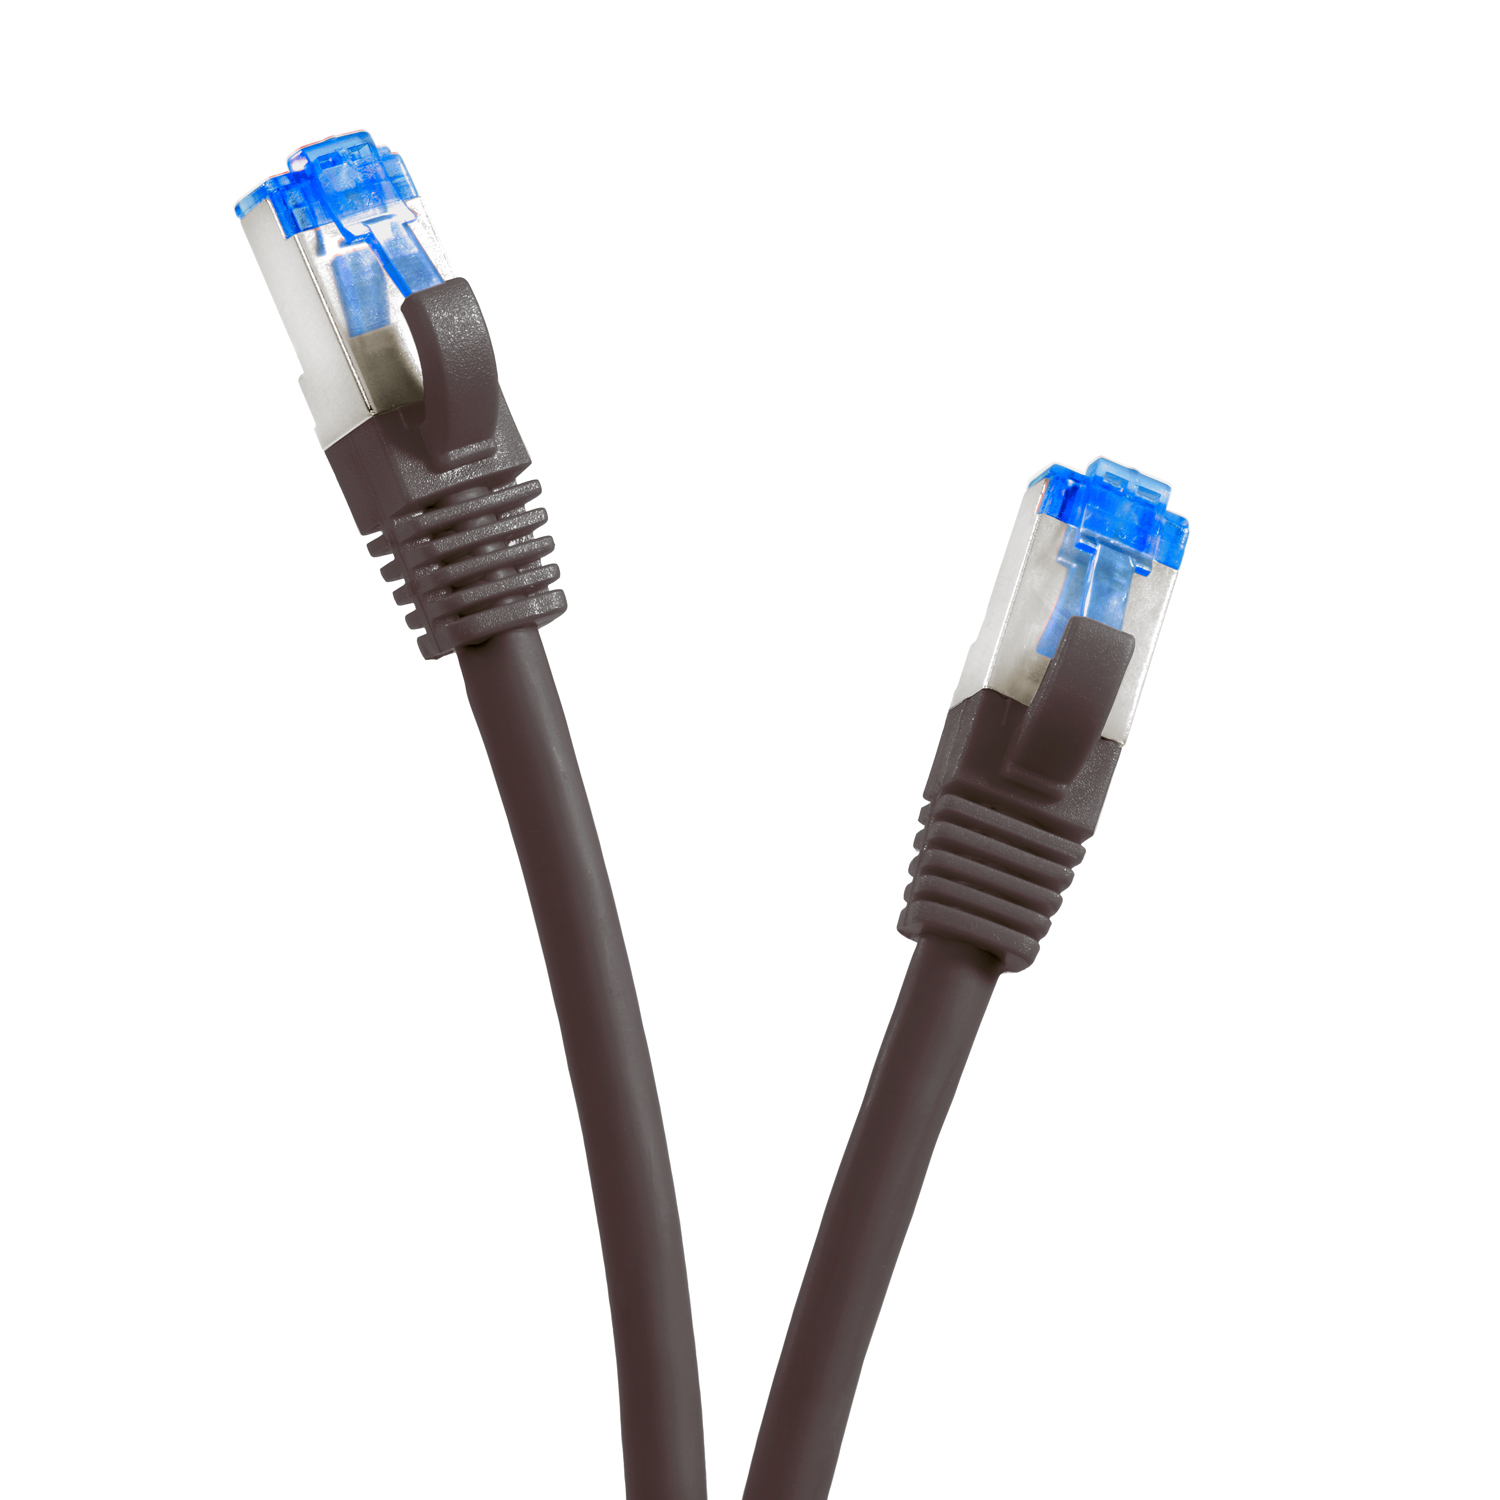 TPFNET 0,25m Patchkabel S/FTP 10GBit, / Netzwerkkabel, schwarz, m 0,25 Netzwerkkabel